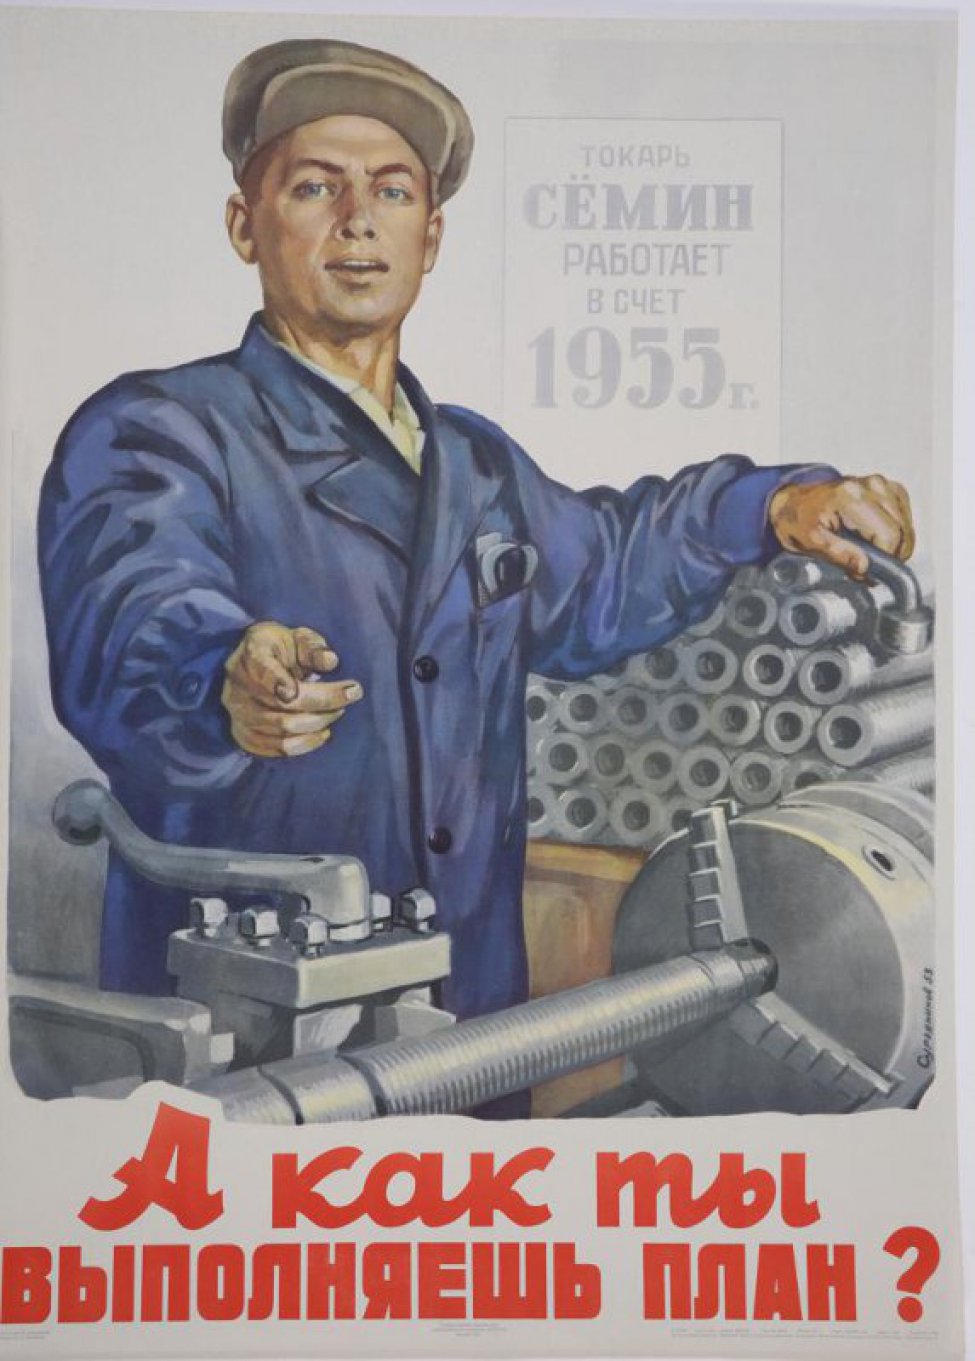 Изображен рабочий в синей спецовке, стоящий у станка. Правой рукой он показывает на надпись плаката, левой опирается на груду деталей, лежащих около него. Справа вверху надпись: " Токарь Семин работает в счет 1955 года".